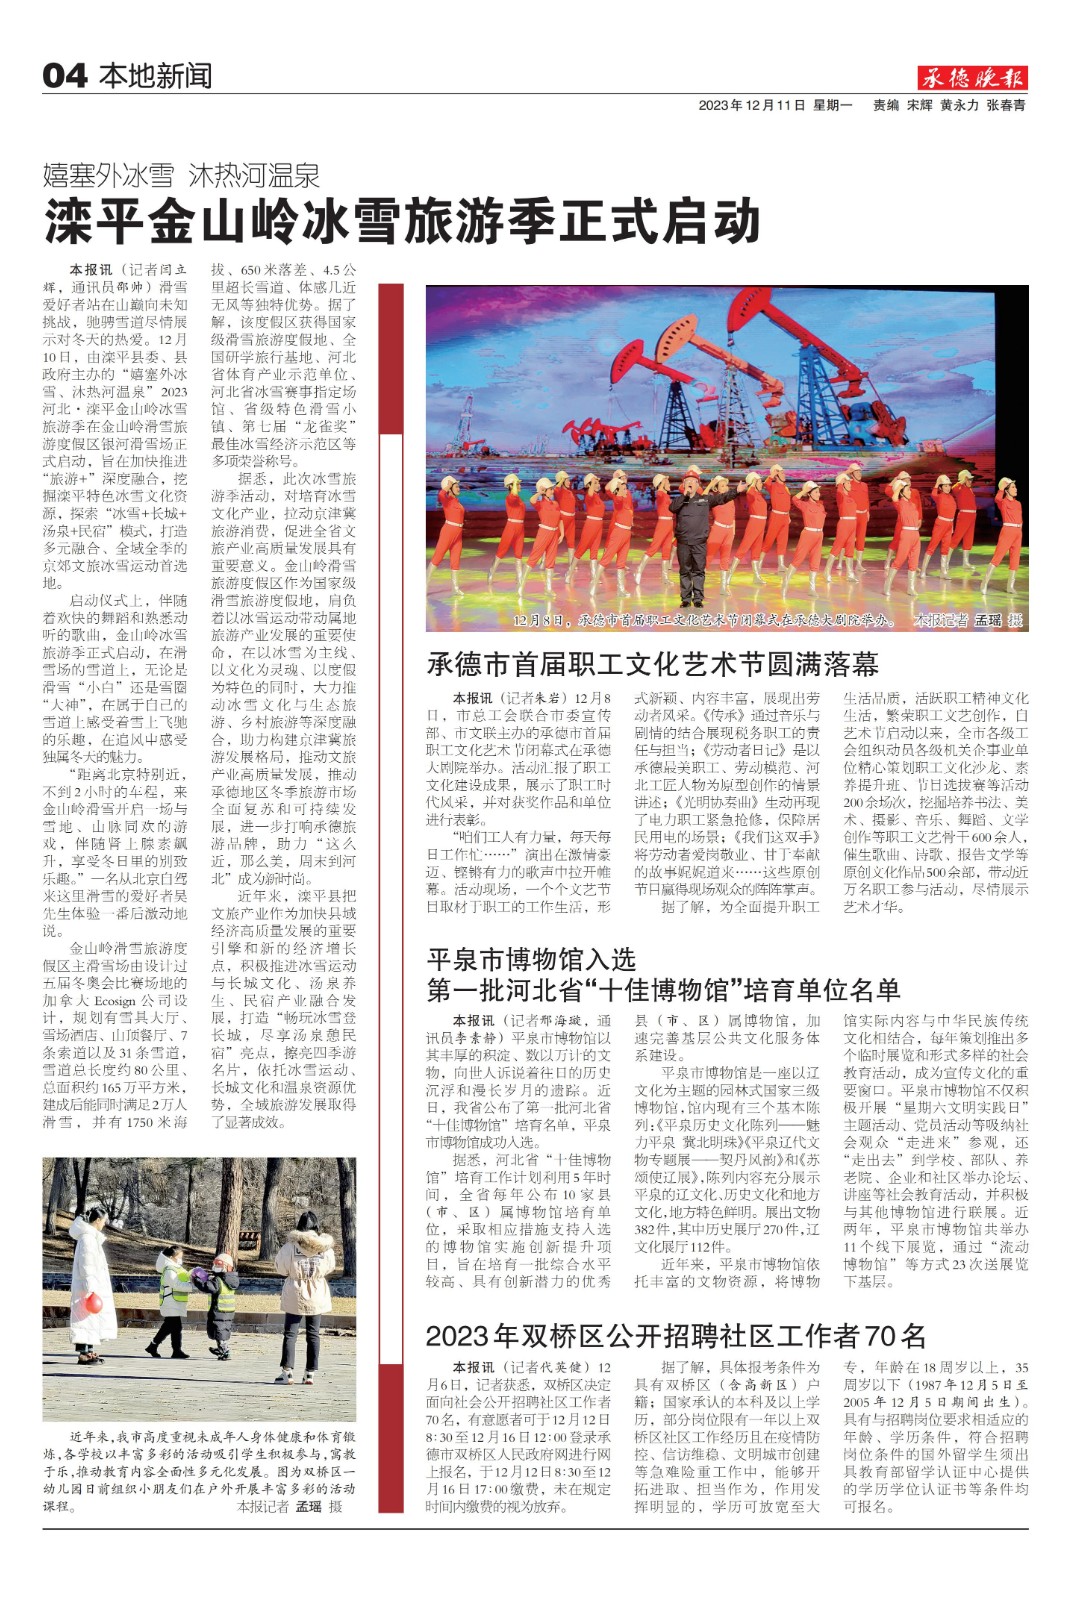 平泉市博物馆入选第一批河北省“十佳博物馆”培育单位名单